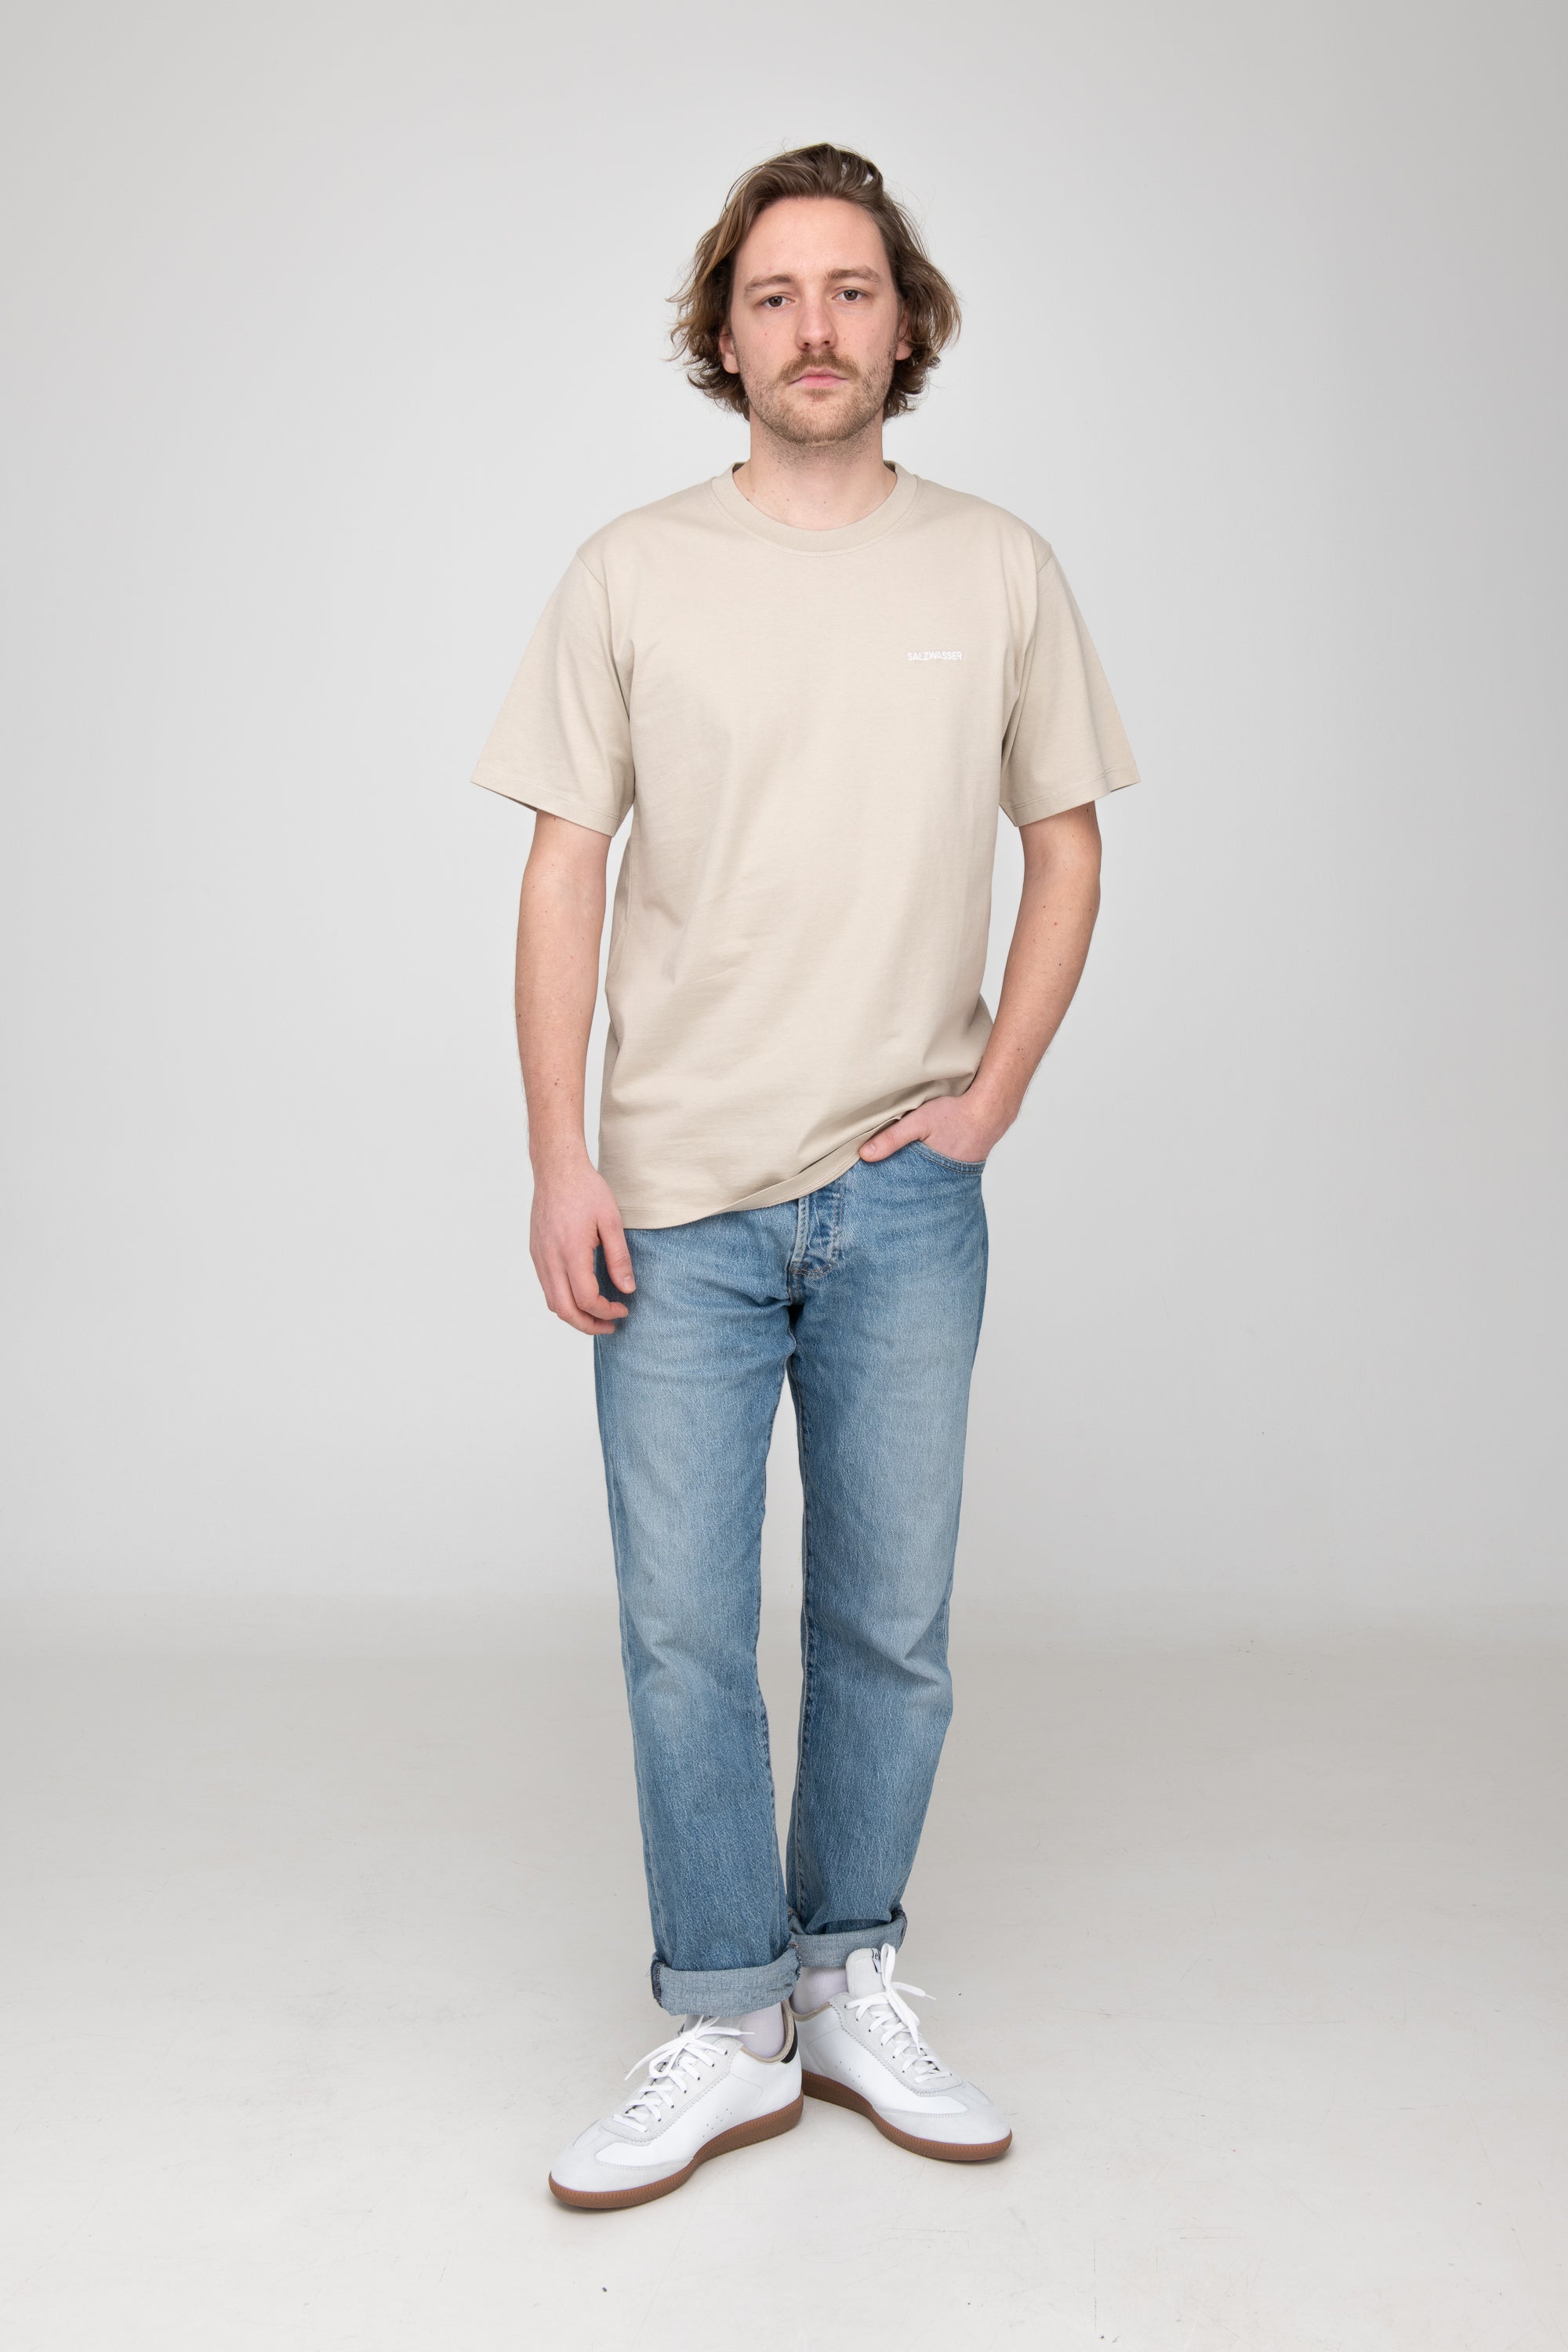 Mann trägt GOTS-zertifiziertes Sand-farbiges T-Shirt von SALZWASSER  Edit alt text